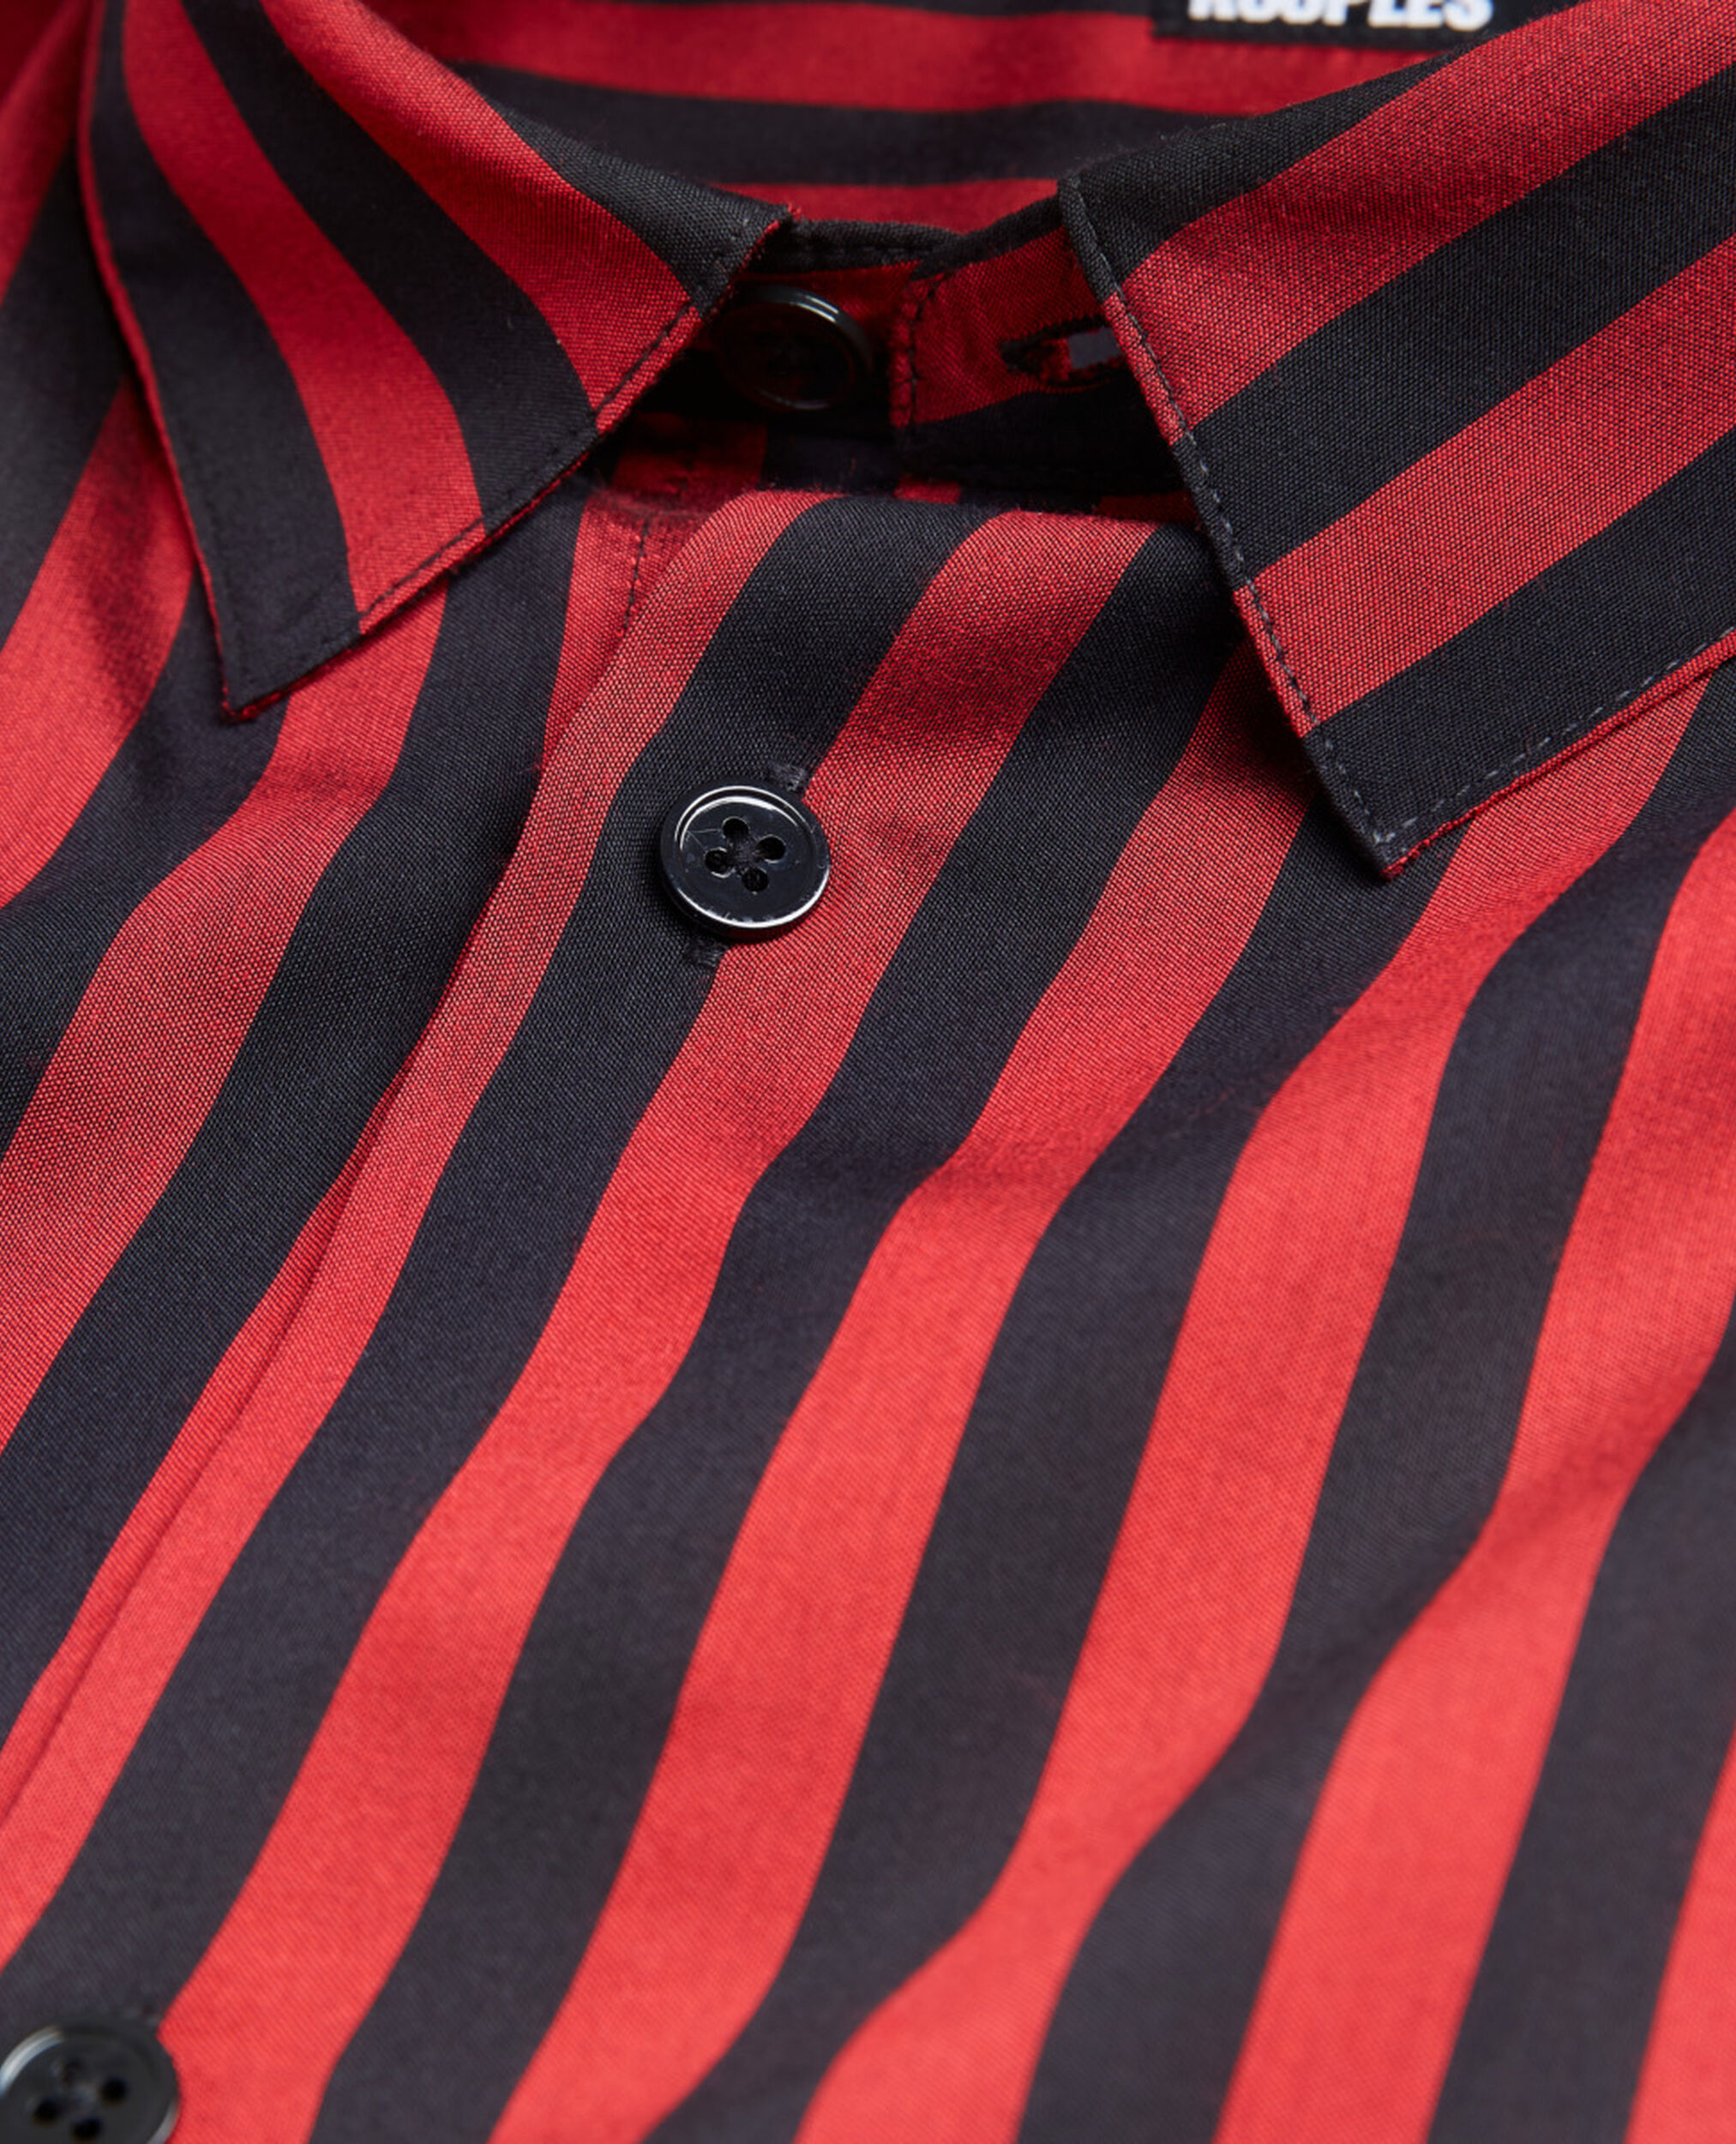 Hemd mit Streifen und Klassischer Kragen, RED / BLACK, hi-res image number null